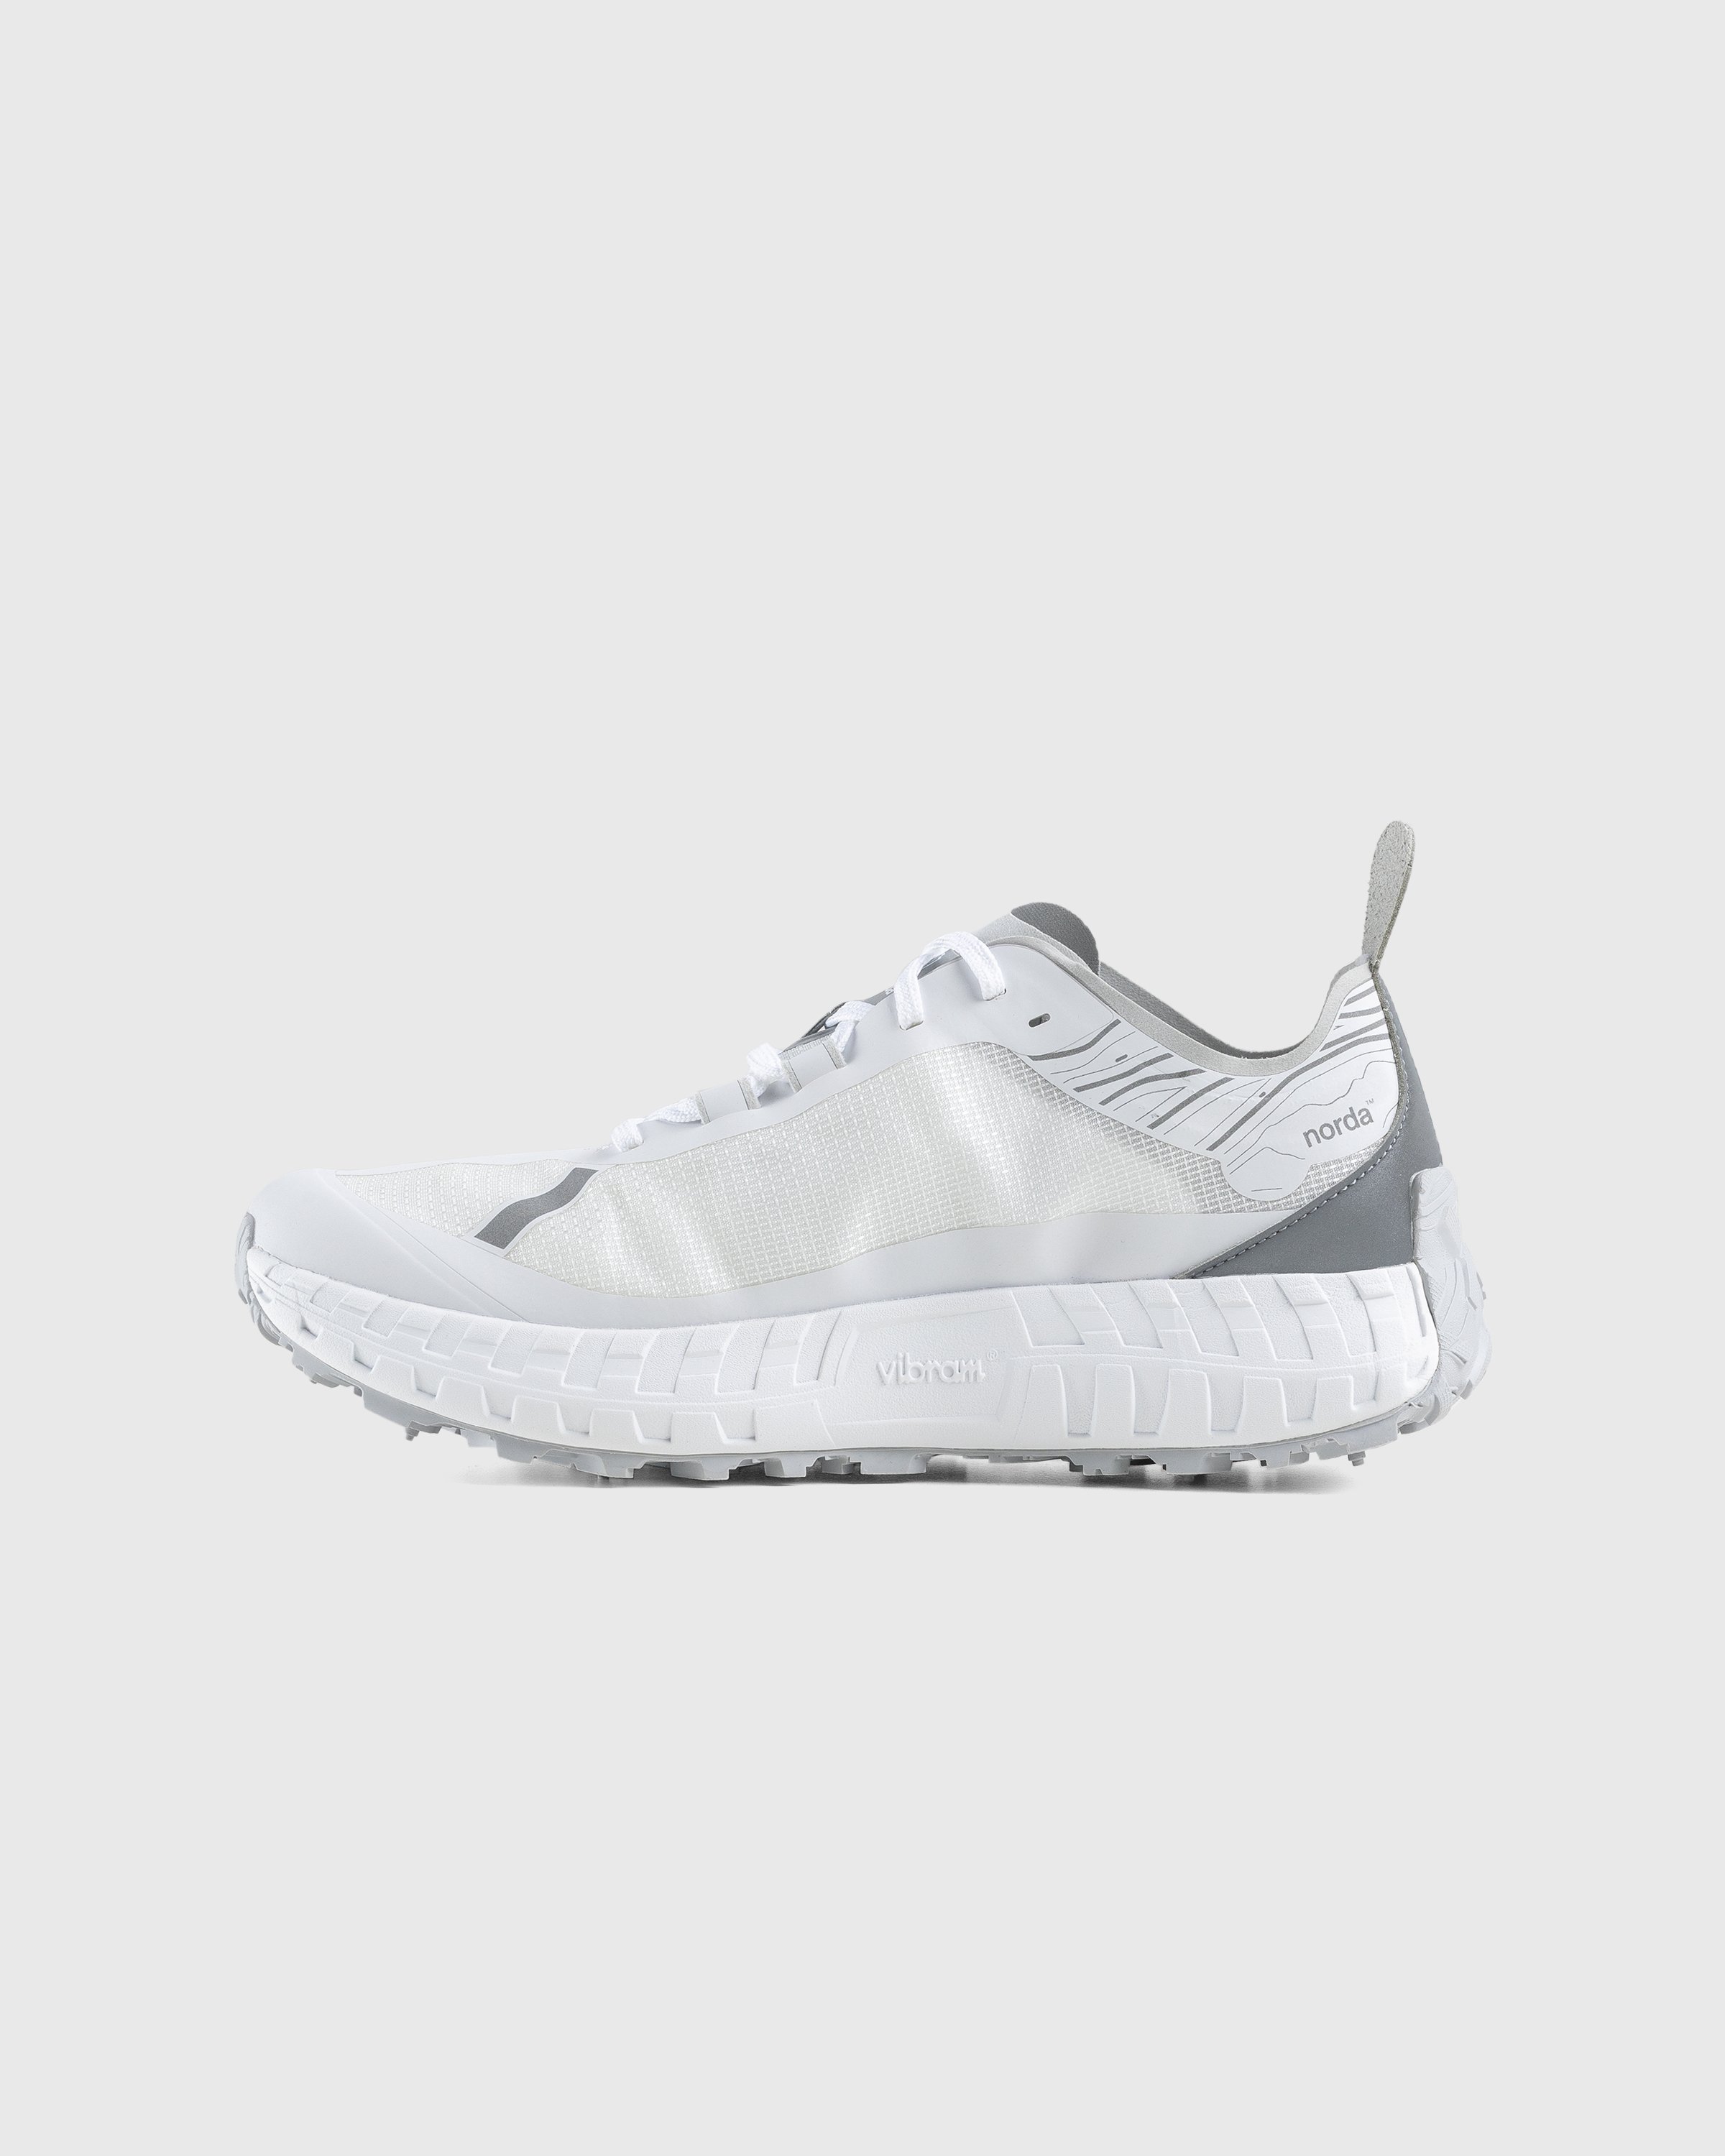 Norda - 001 M White/Grey - Footwear - White - Image 2